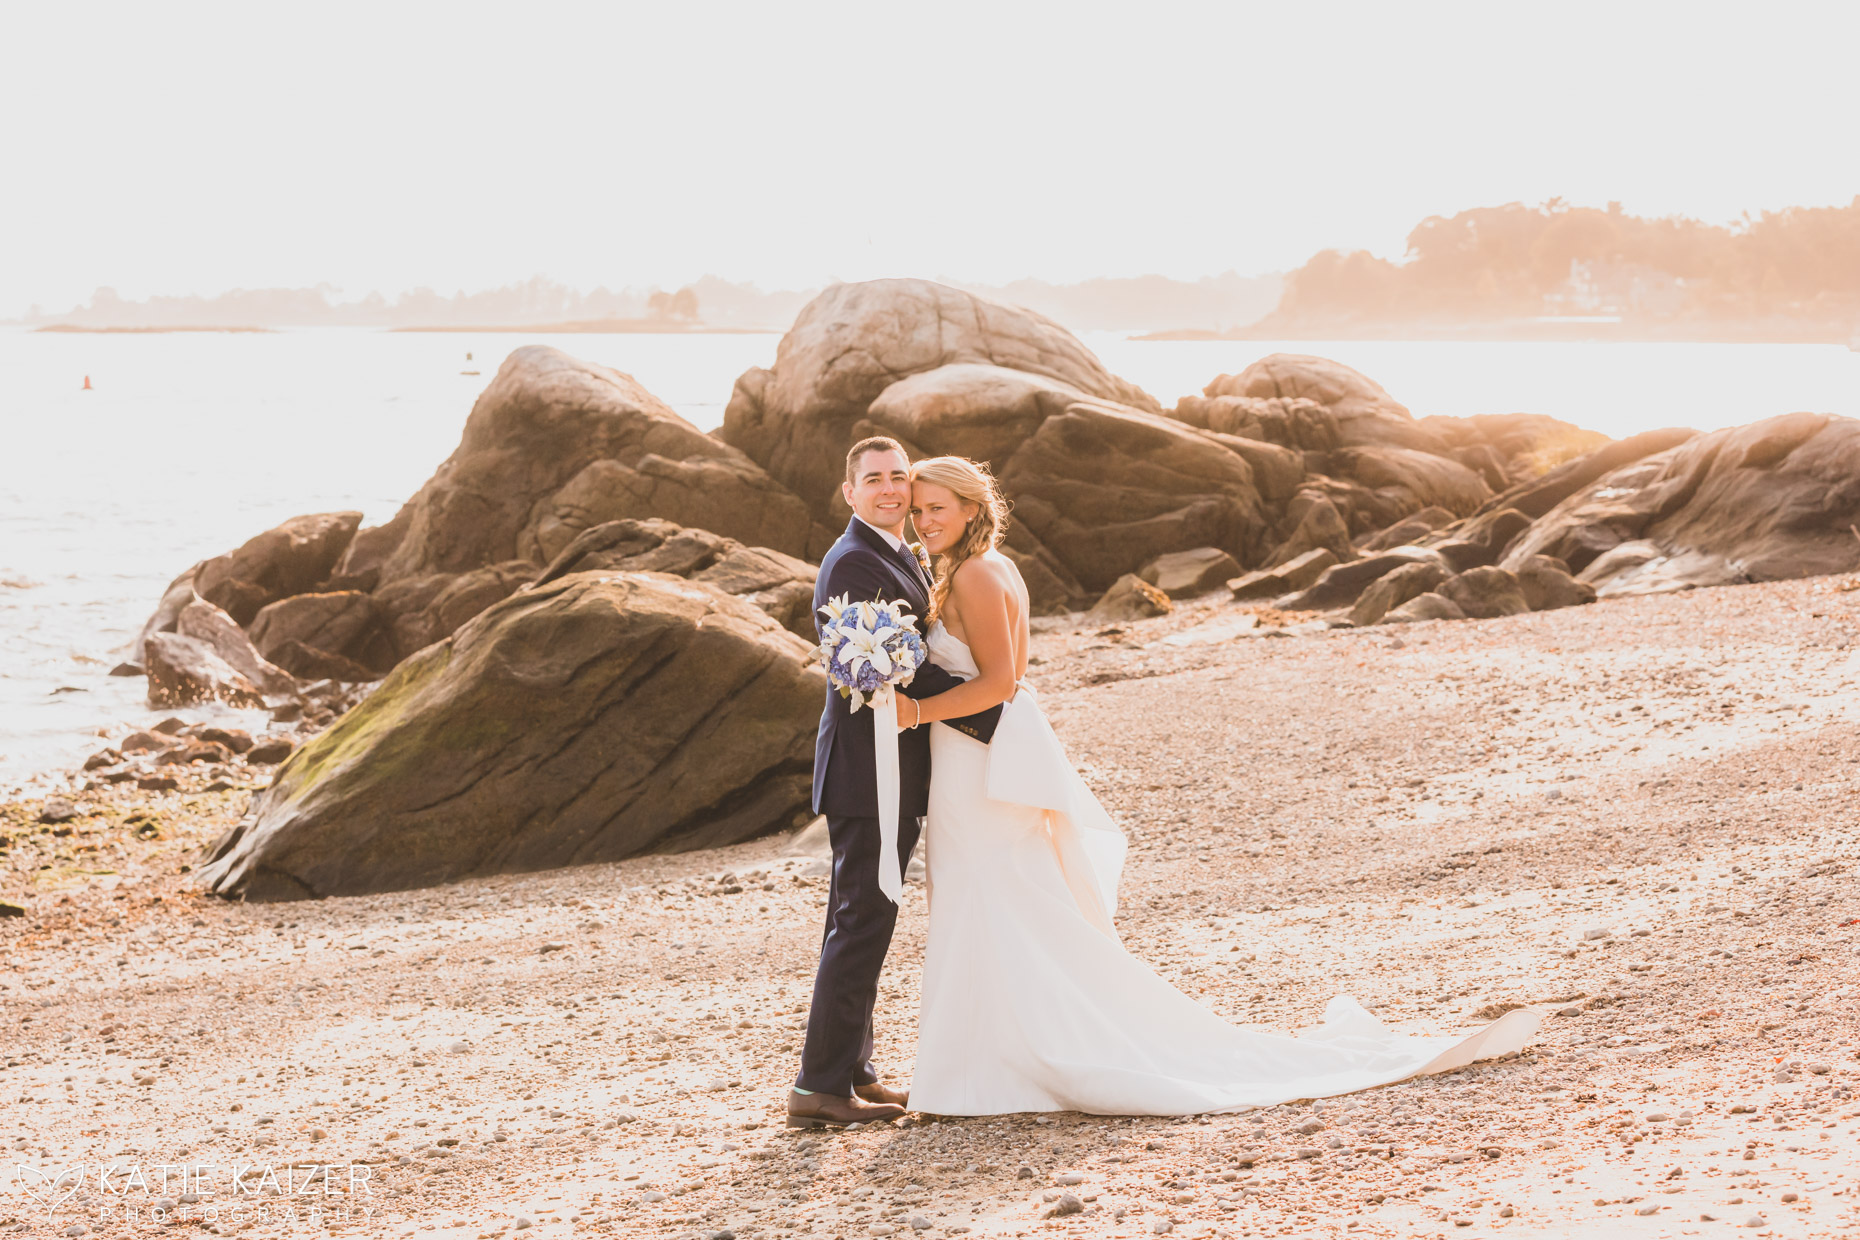 Lauren & Jared's Wedding - WeefanPhotography